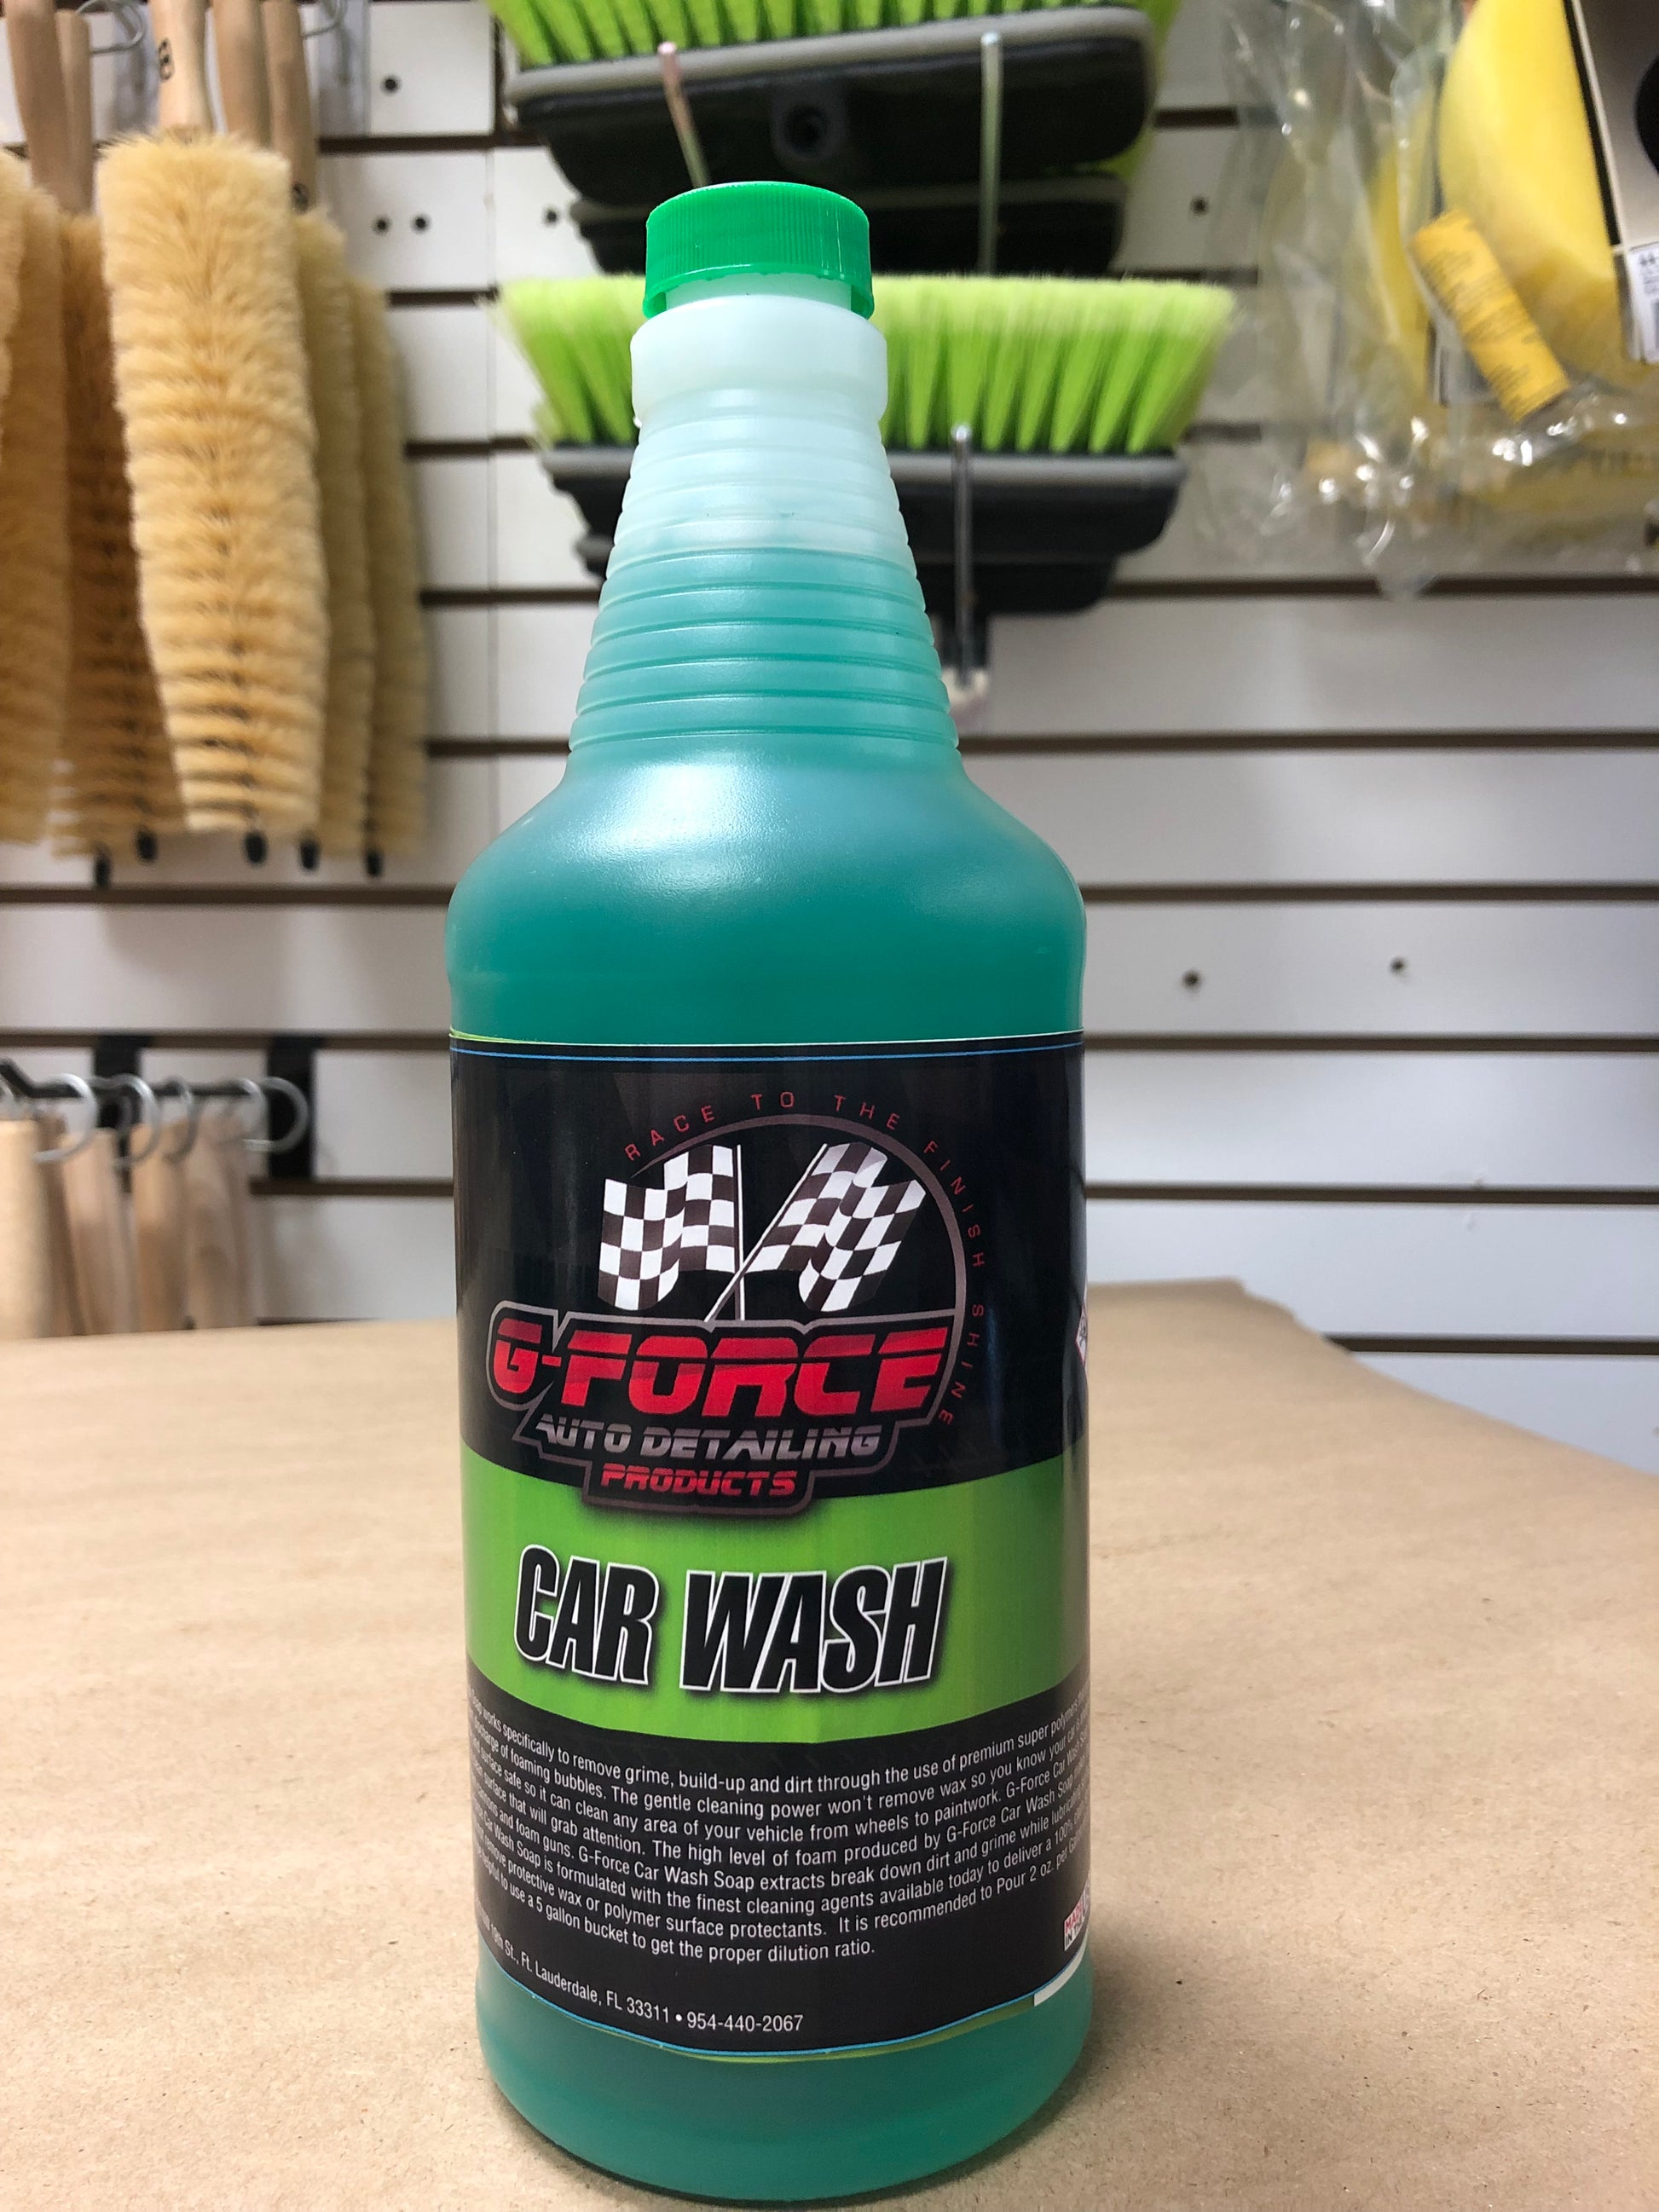 Foamalanche Car Wash Soap - GV Automotive Products